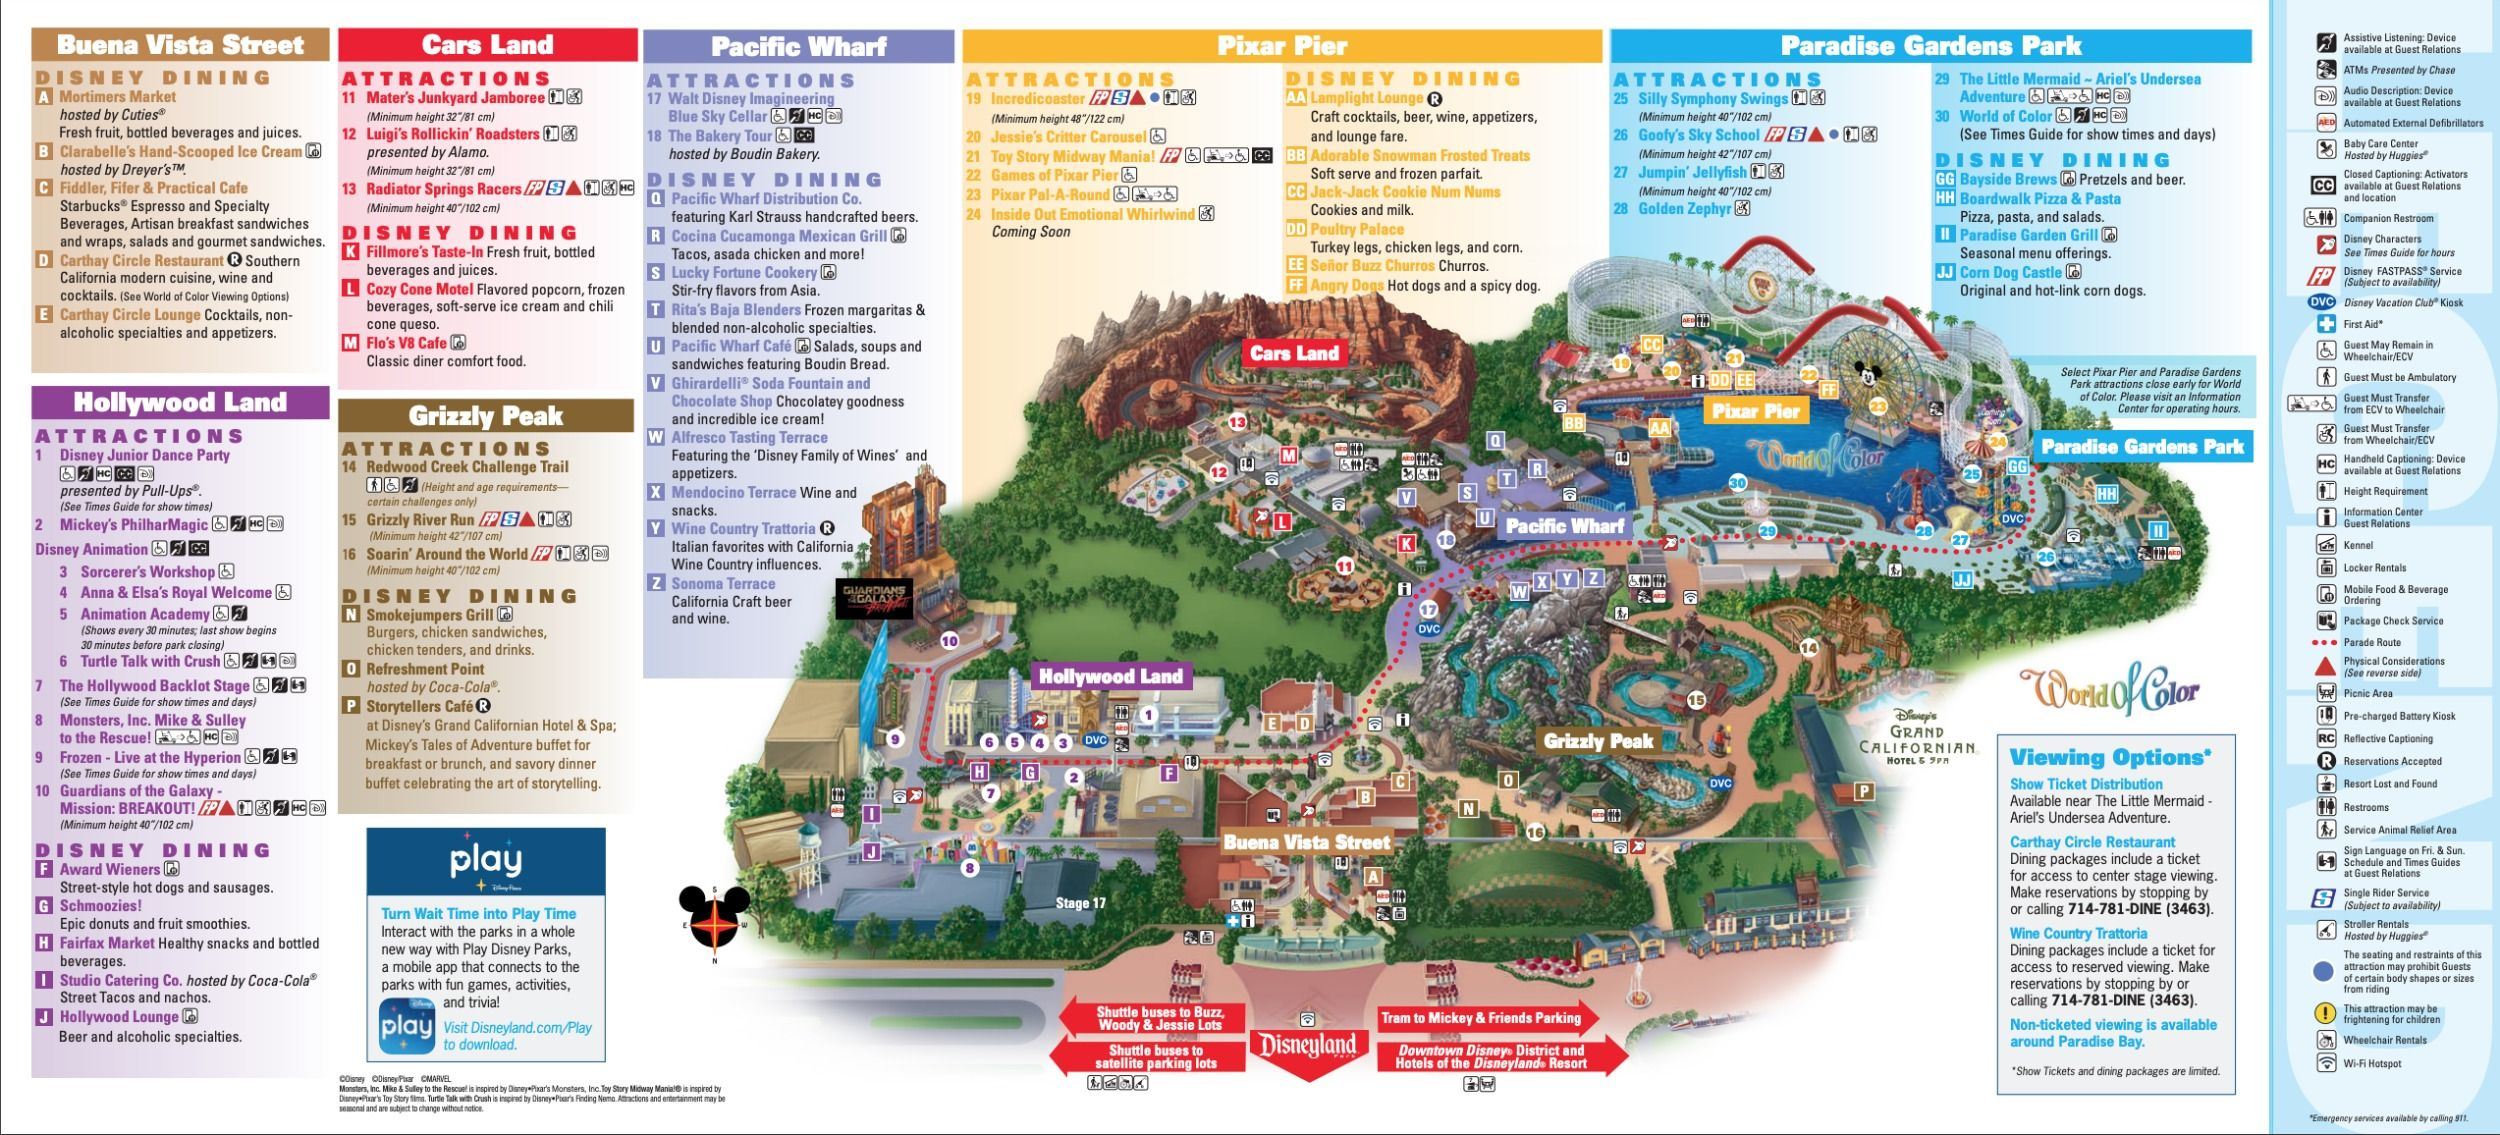 Disneyland Park Map In California Map Of Disneyland Disneyland Map 